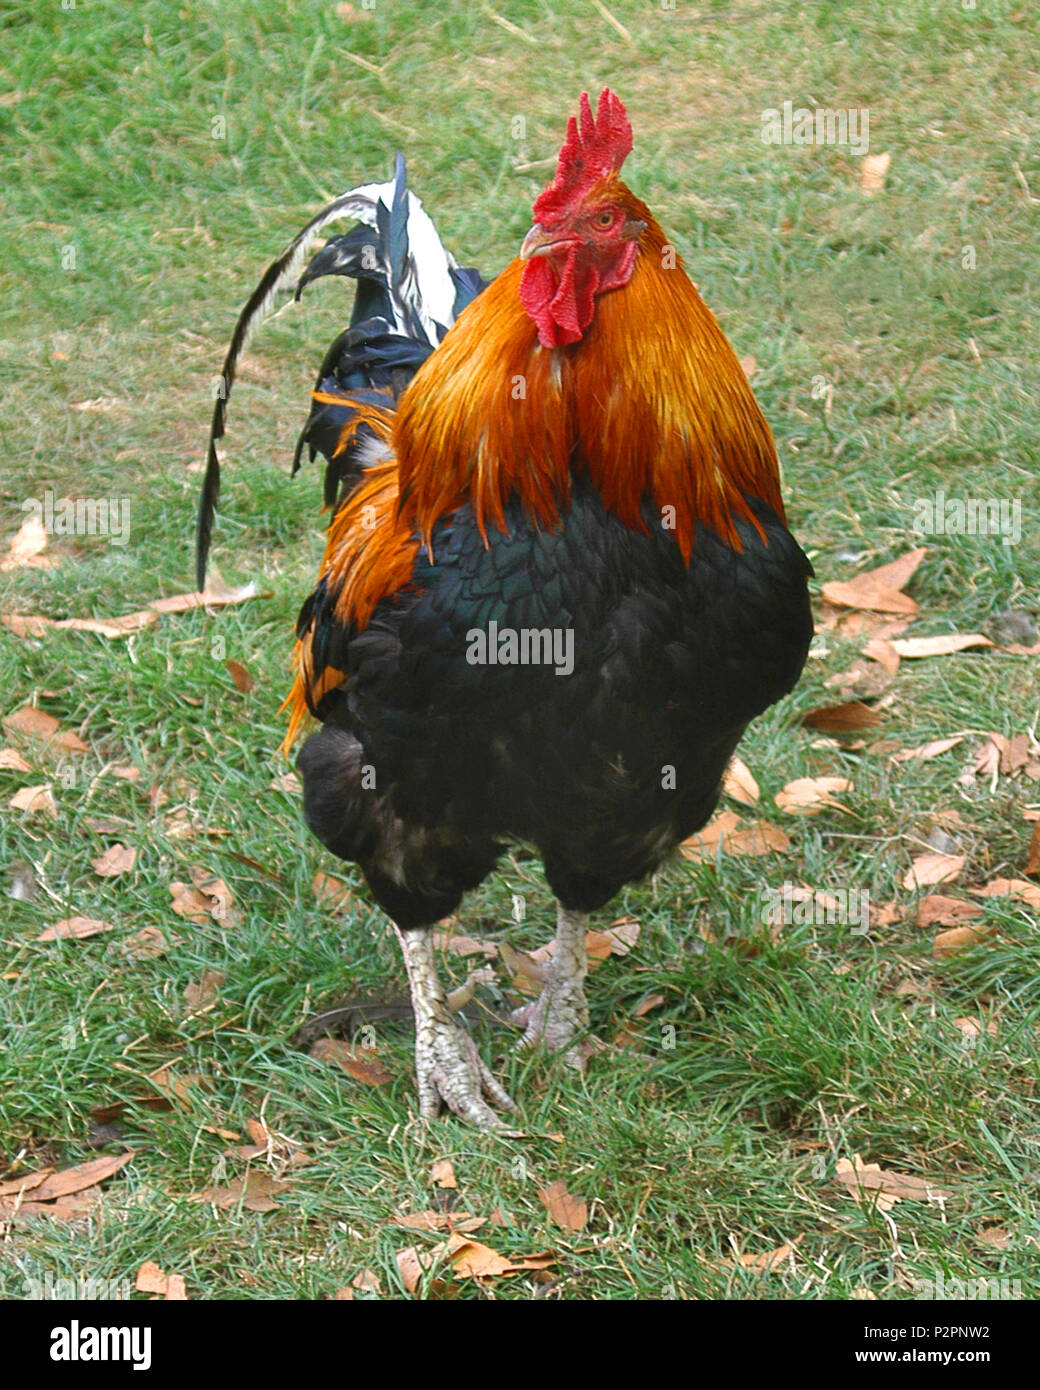 Un coq, aussi connu comme un coq, gamecock ou coq, est un homme d'oiseaux gallinacés, habituellement un poulet mâle. Banque D'Images